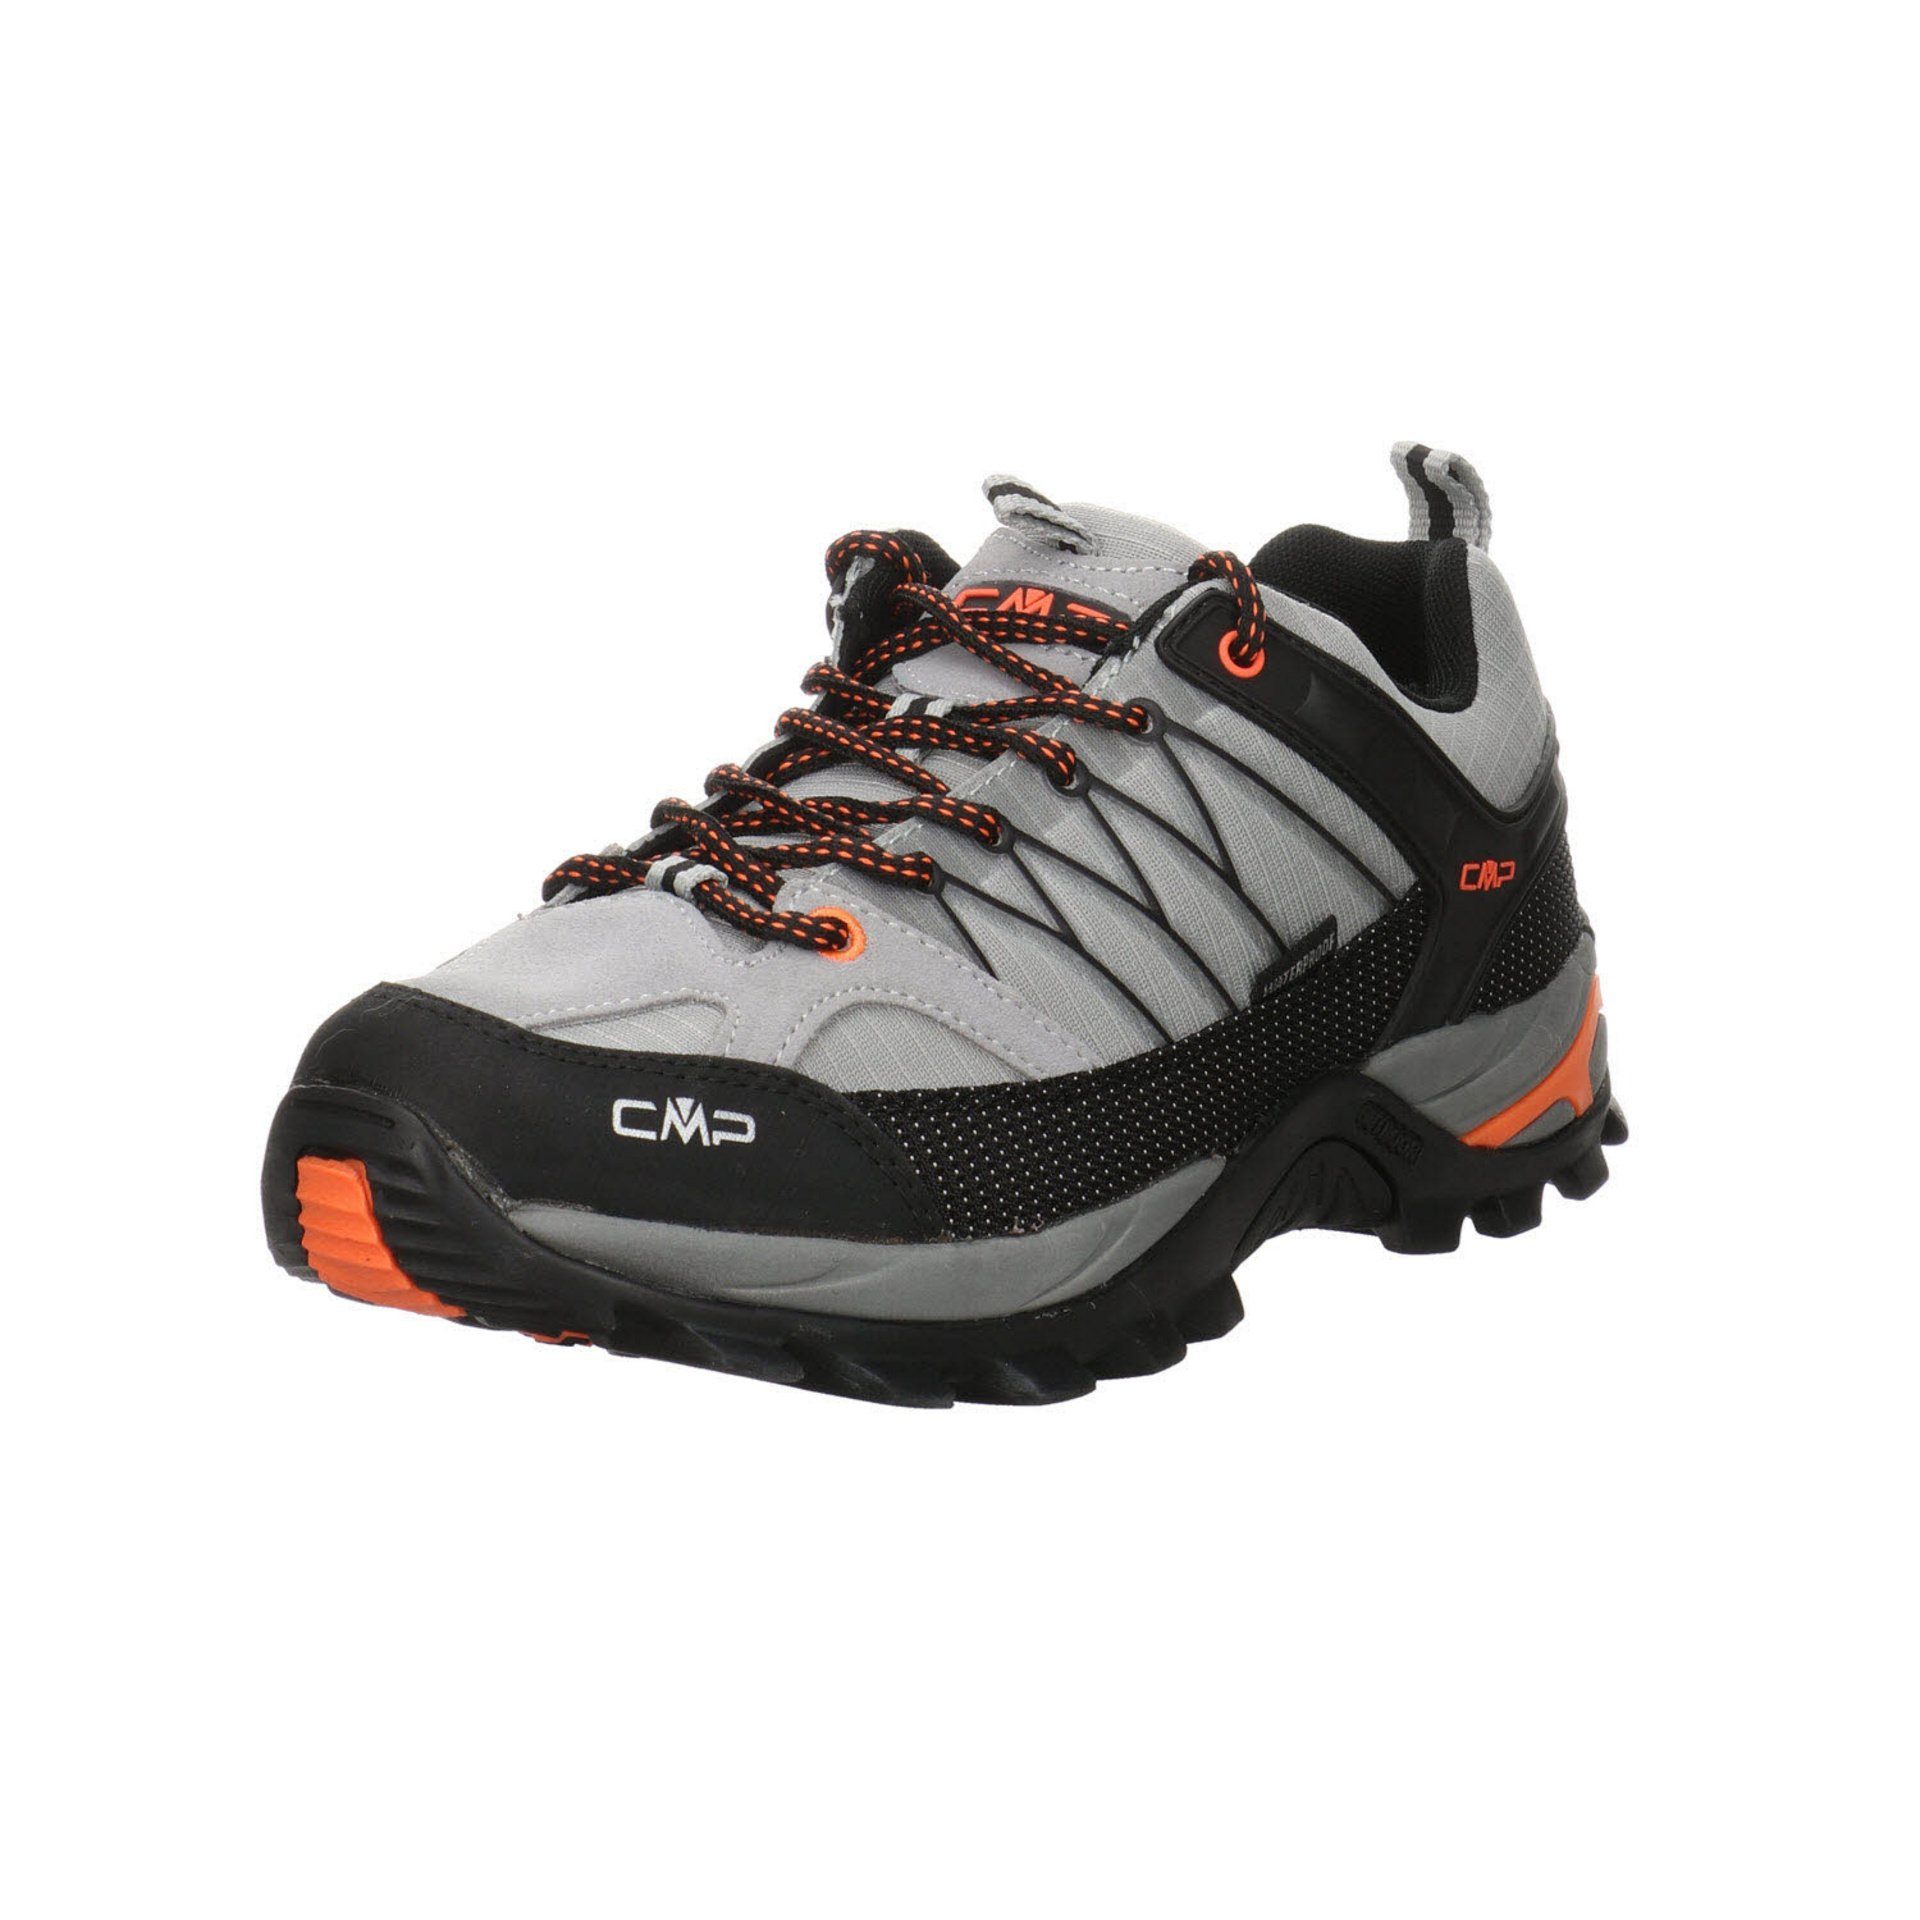 CMP Herren Outdoor Schuhe Rigel Mid Trekking Halbschuh Outdoorschuh Leder-/Textilkombination cemento-nero (03201628)